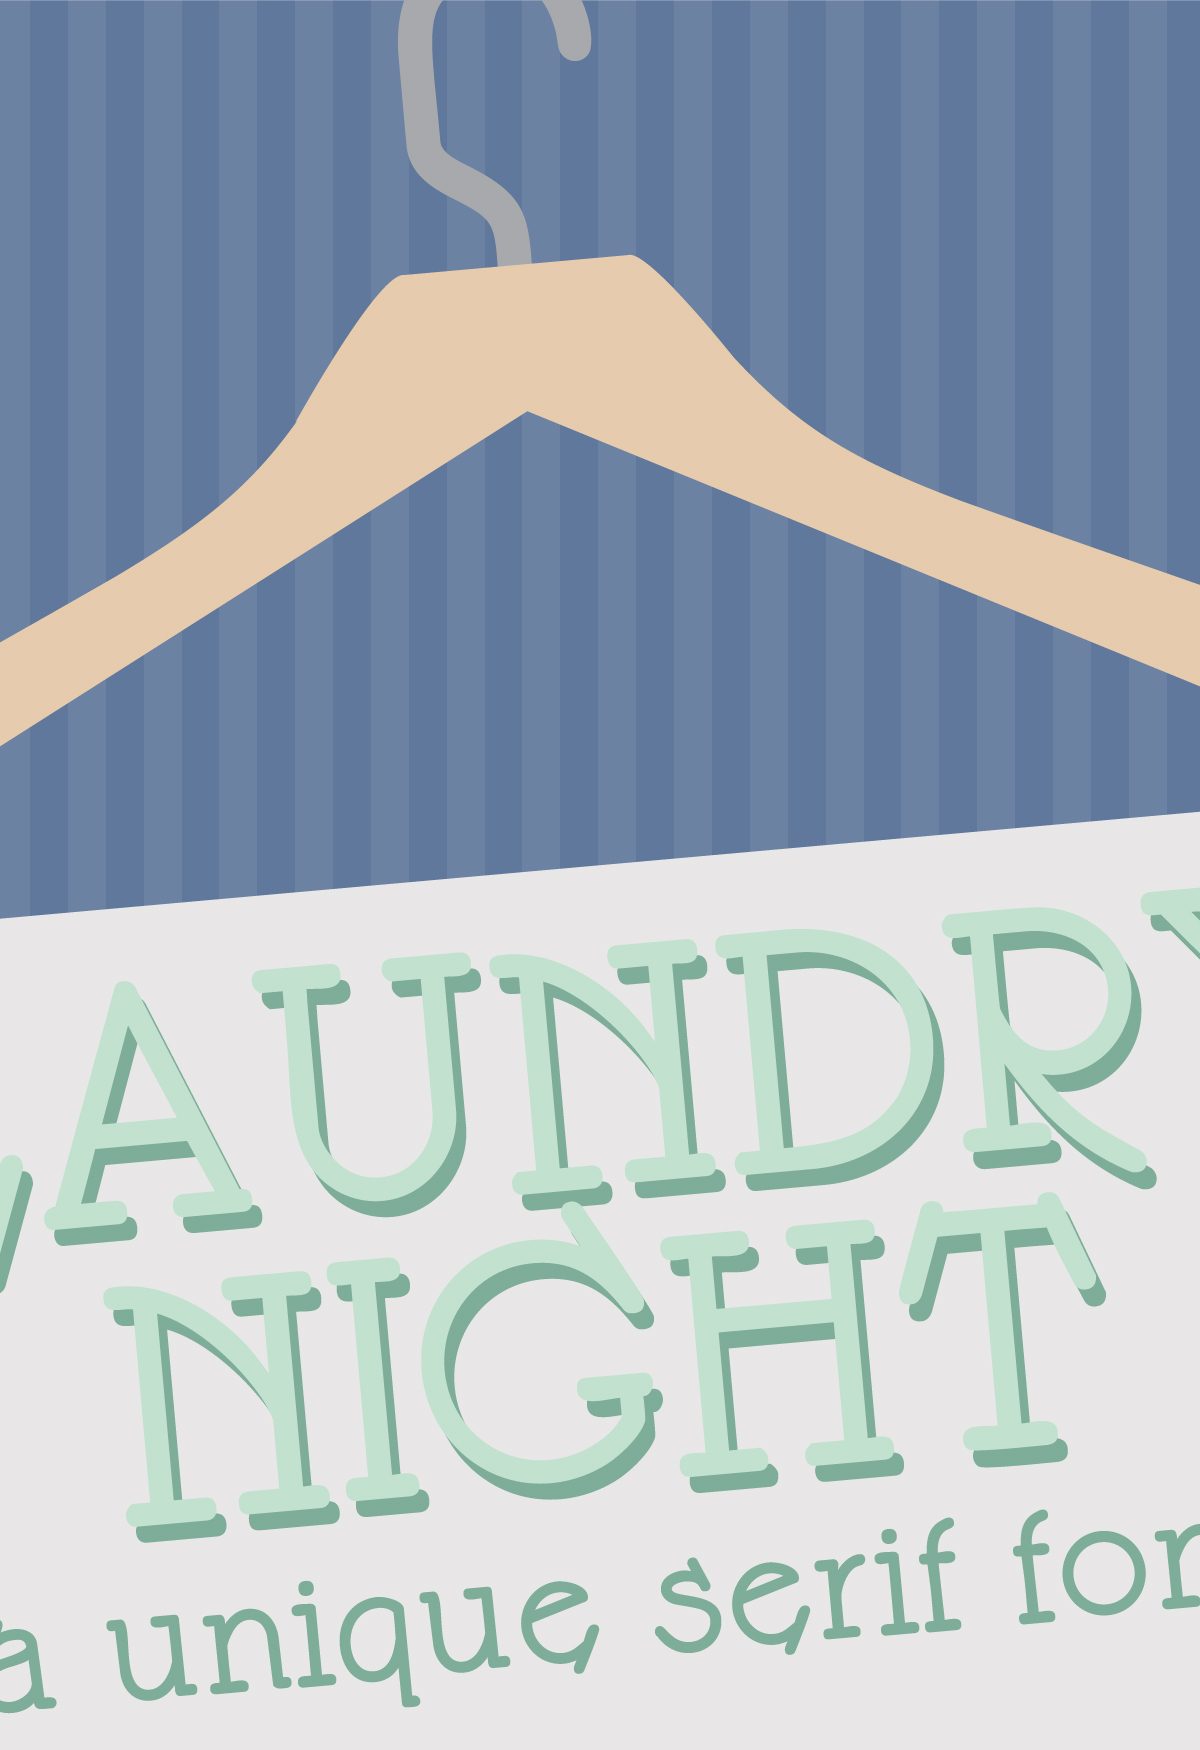 LD Laundry Night Regular Font素材中国精选英文字体